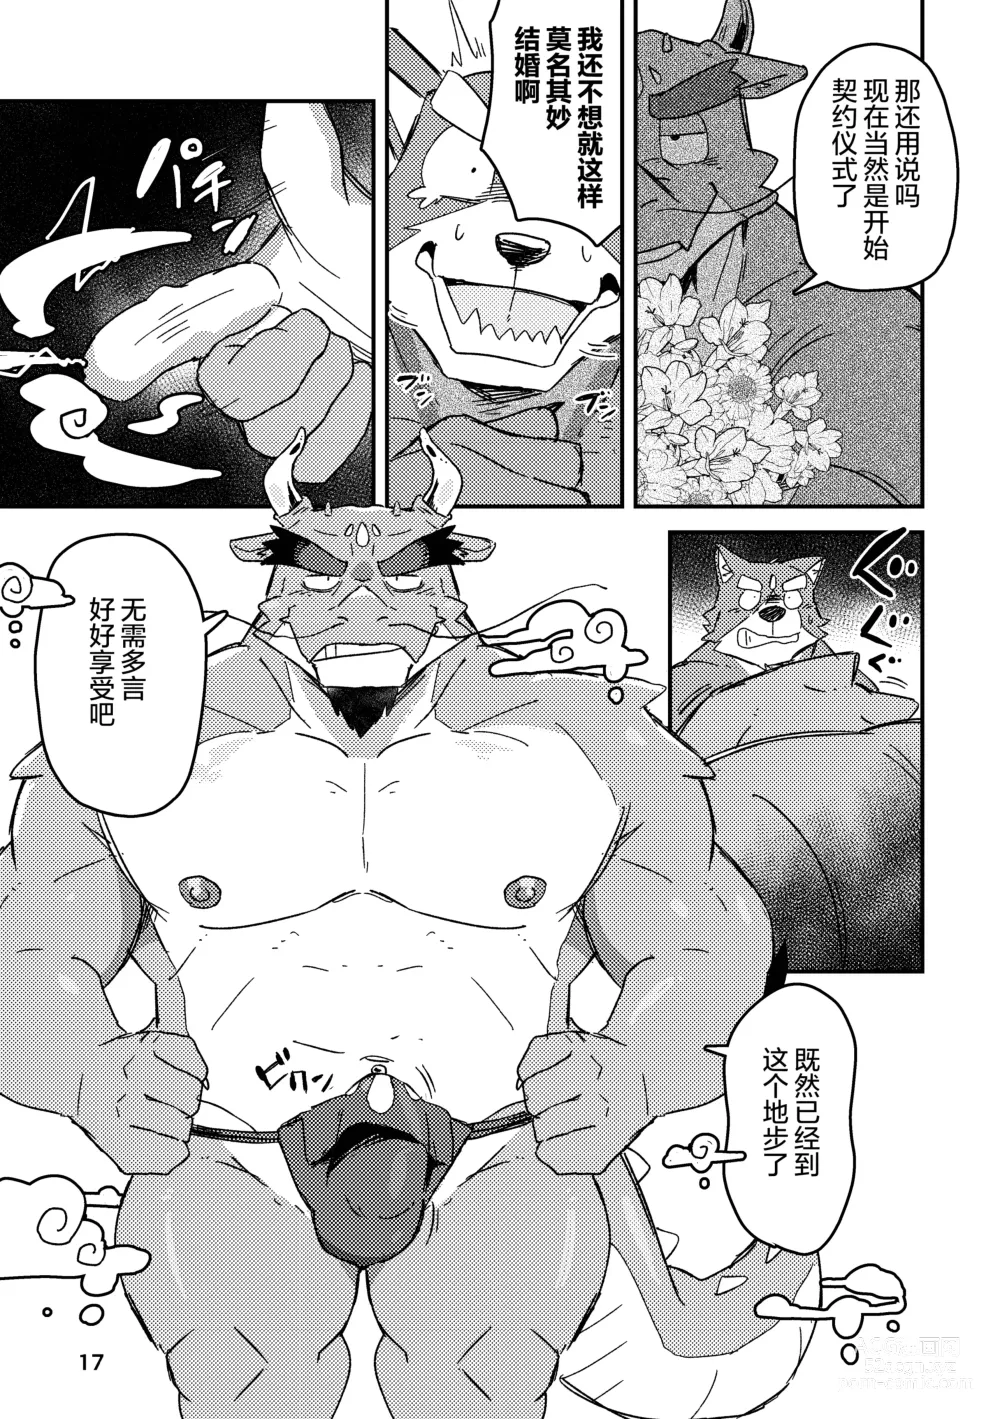 Page 17 of doujinshi 约定的龙穴